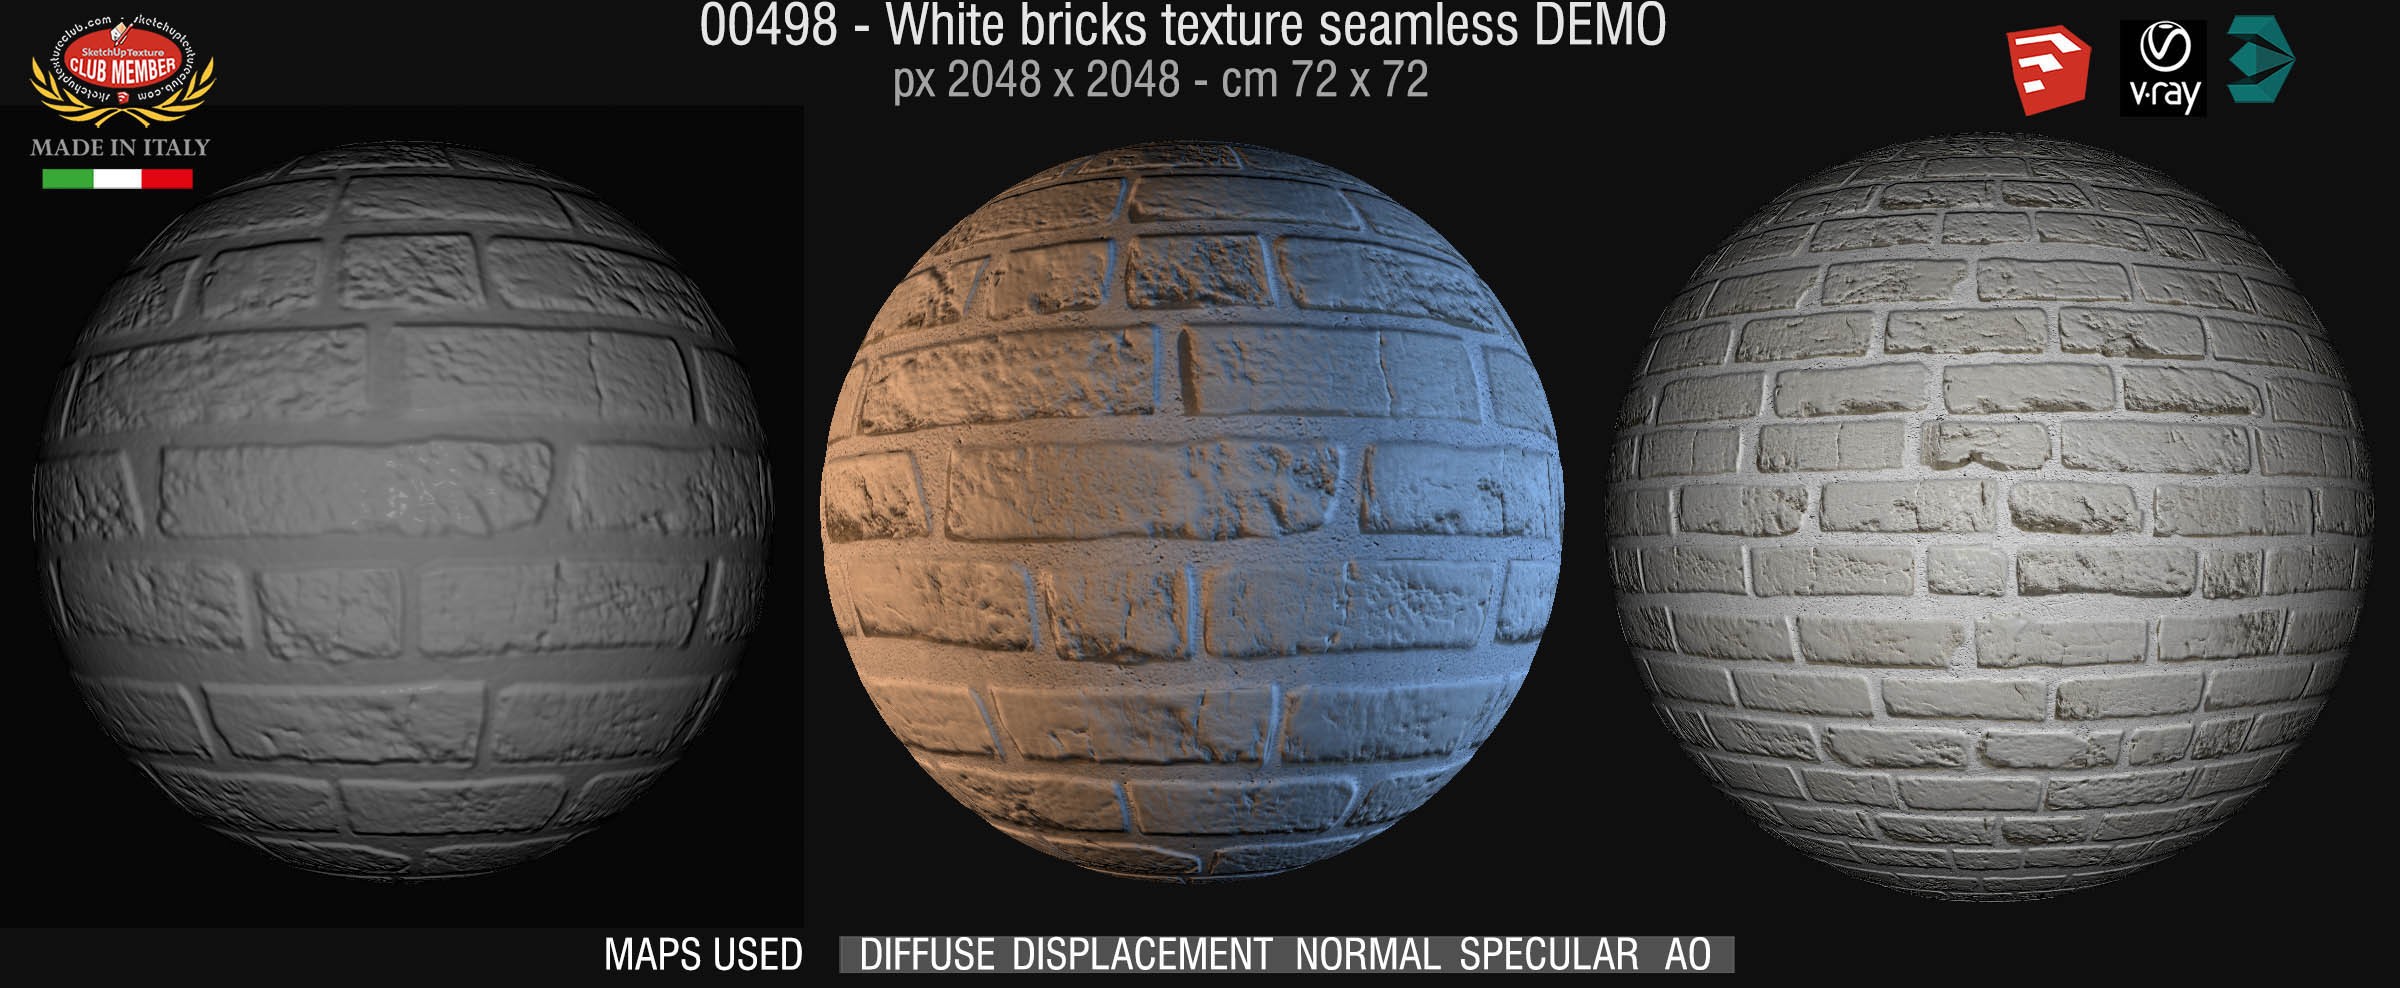 00498 White bricks texture seamless + maps DEMO